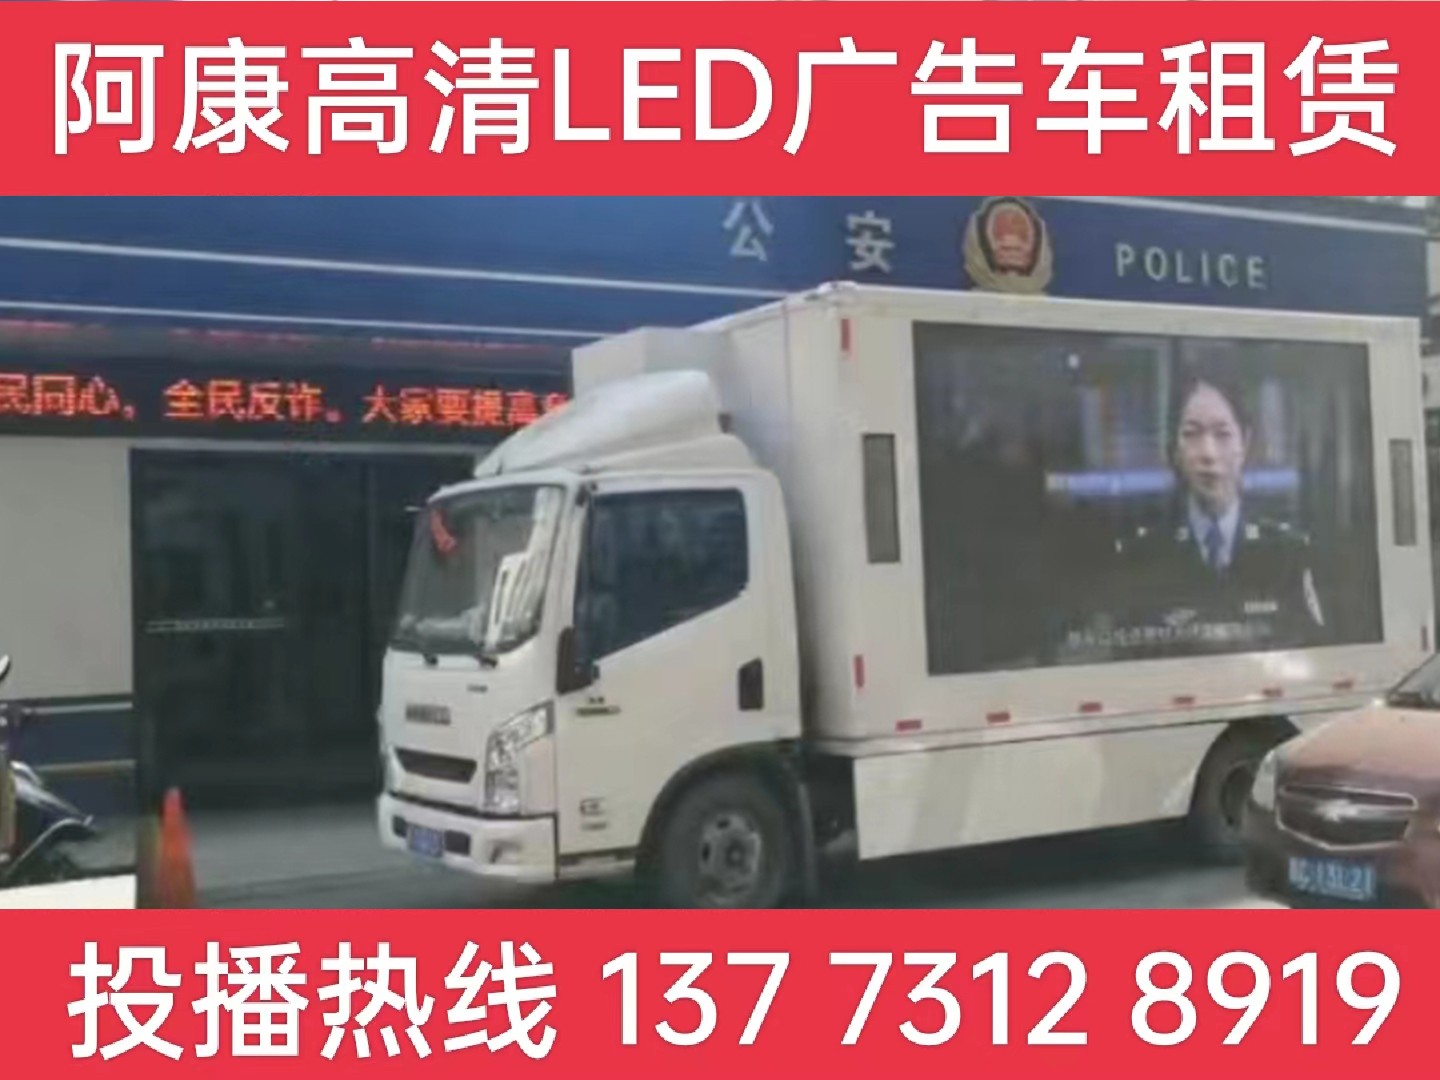 芜湖LED广告车租赁-反诈宣传